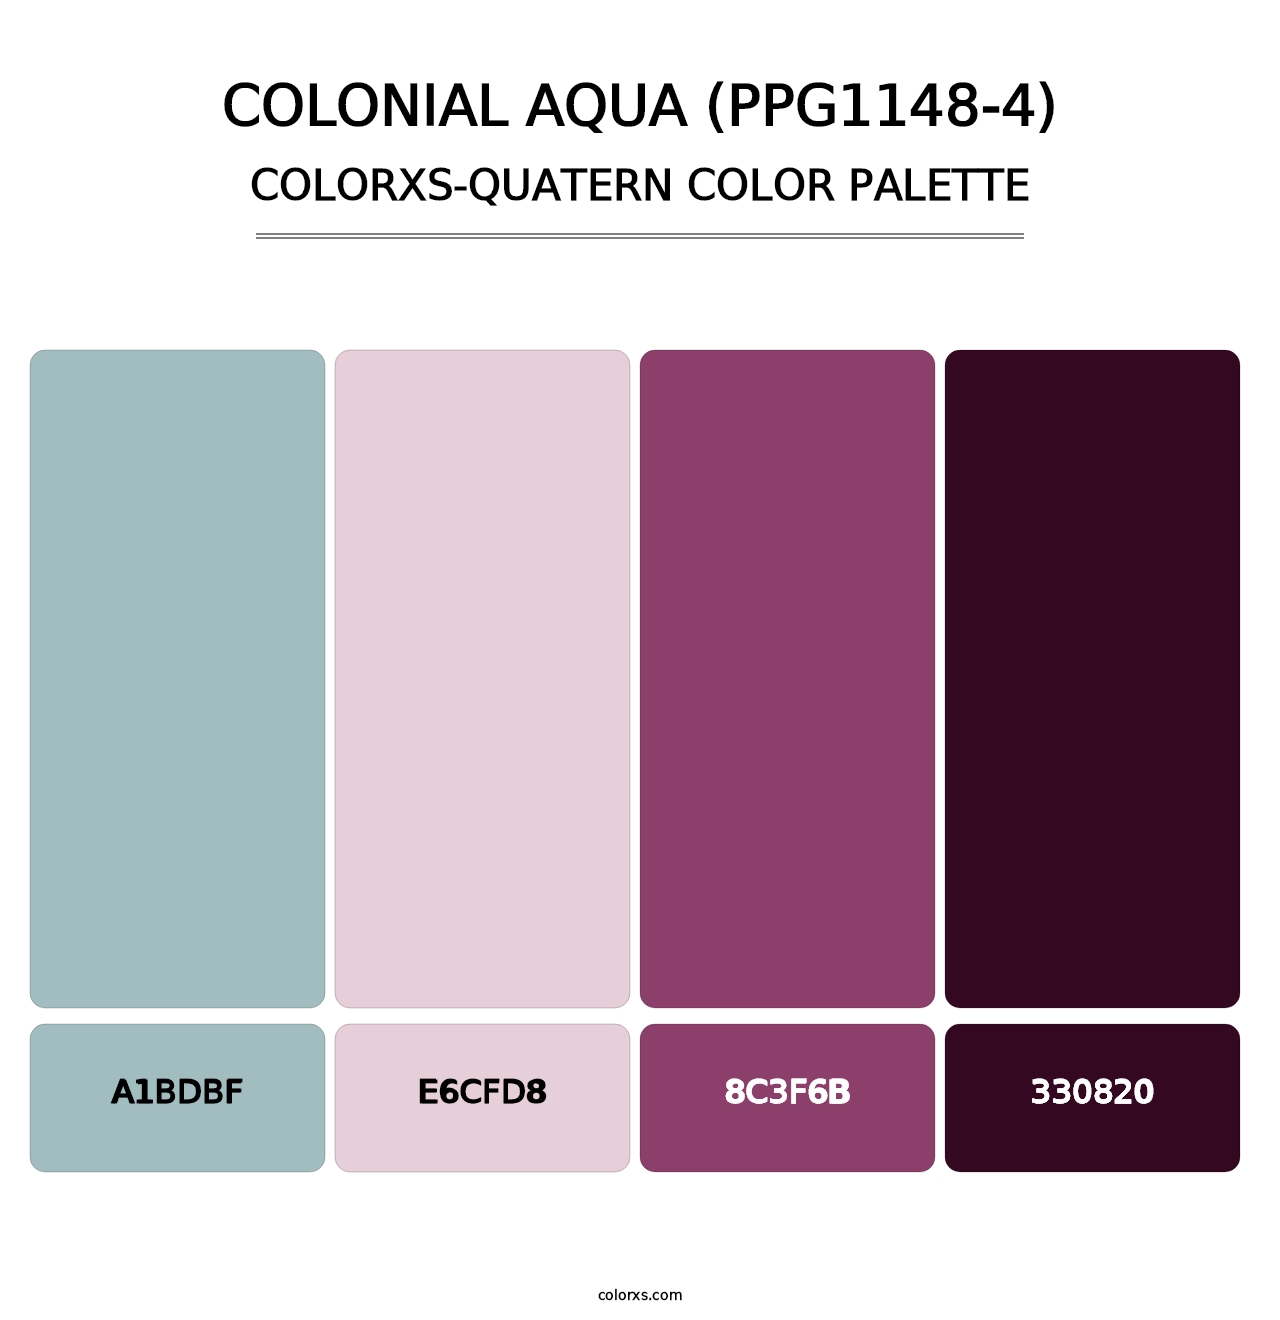 Colonial Aqua (PPG1148-4) - Colorxs Quatern Palette